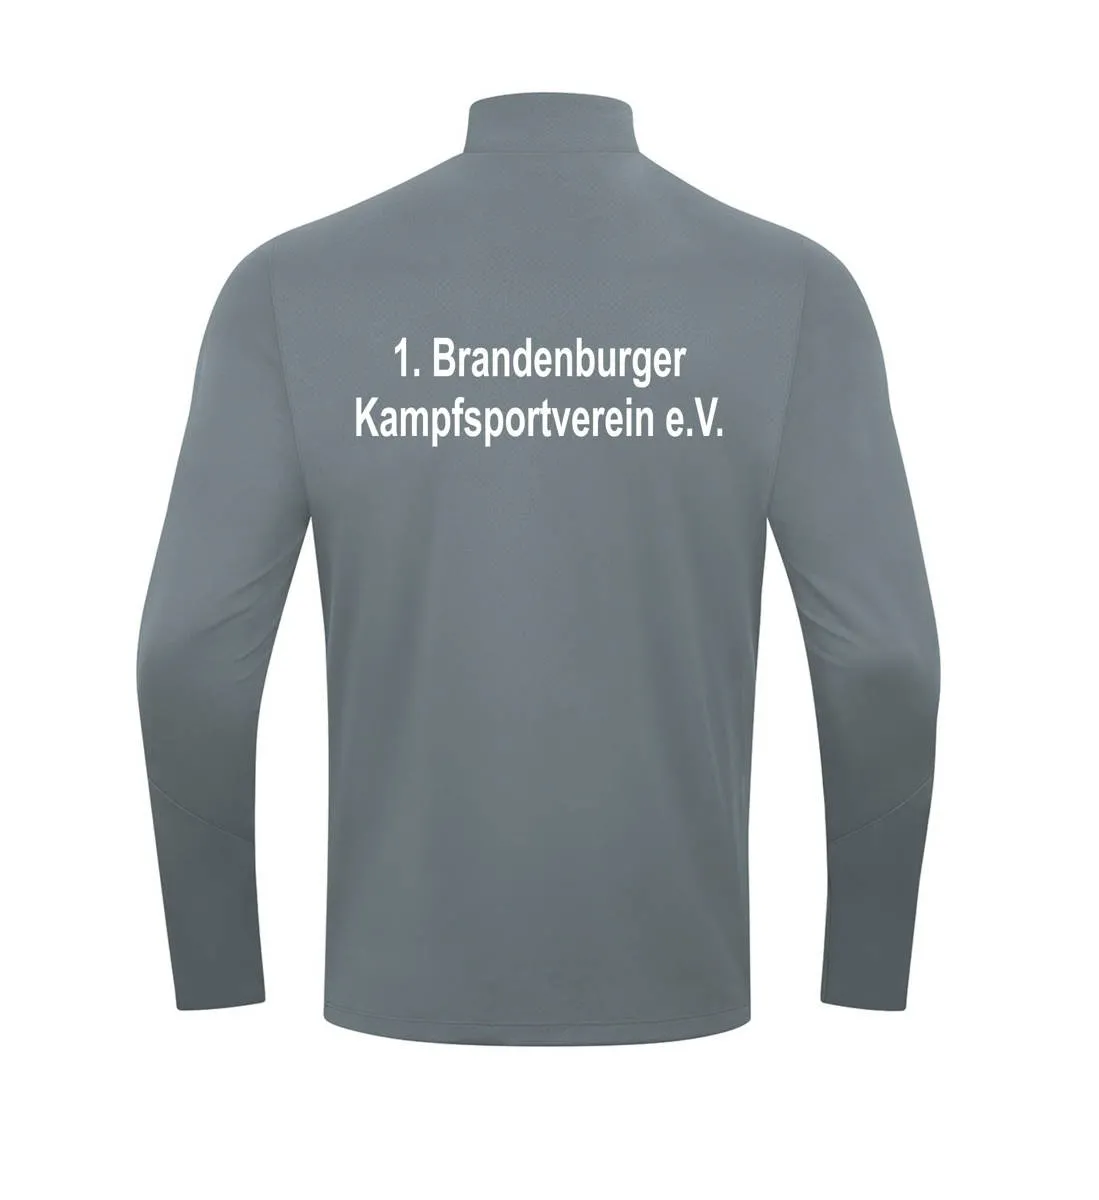 JAKO T-shirt à manches longues Brandenburger Kampfsportverein